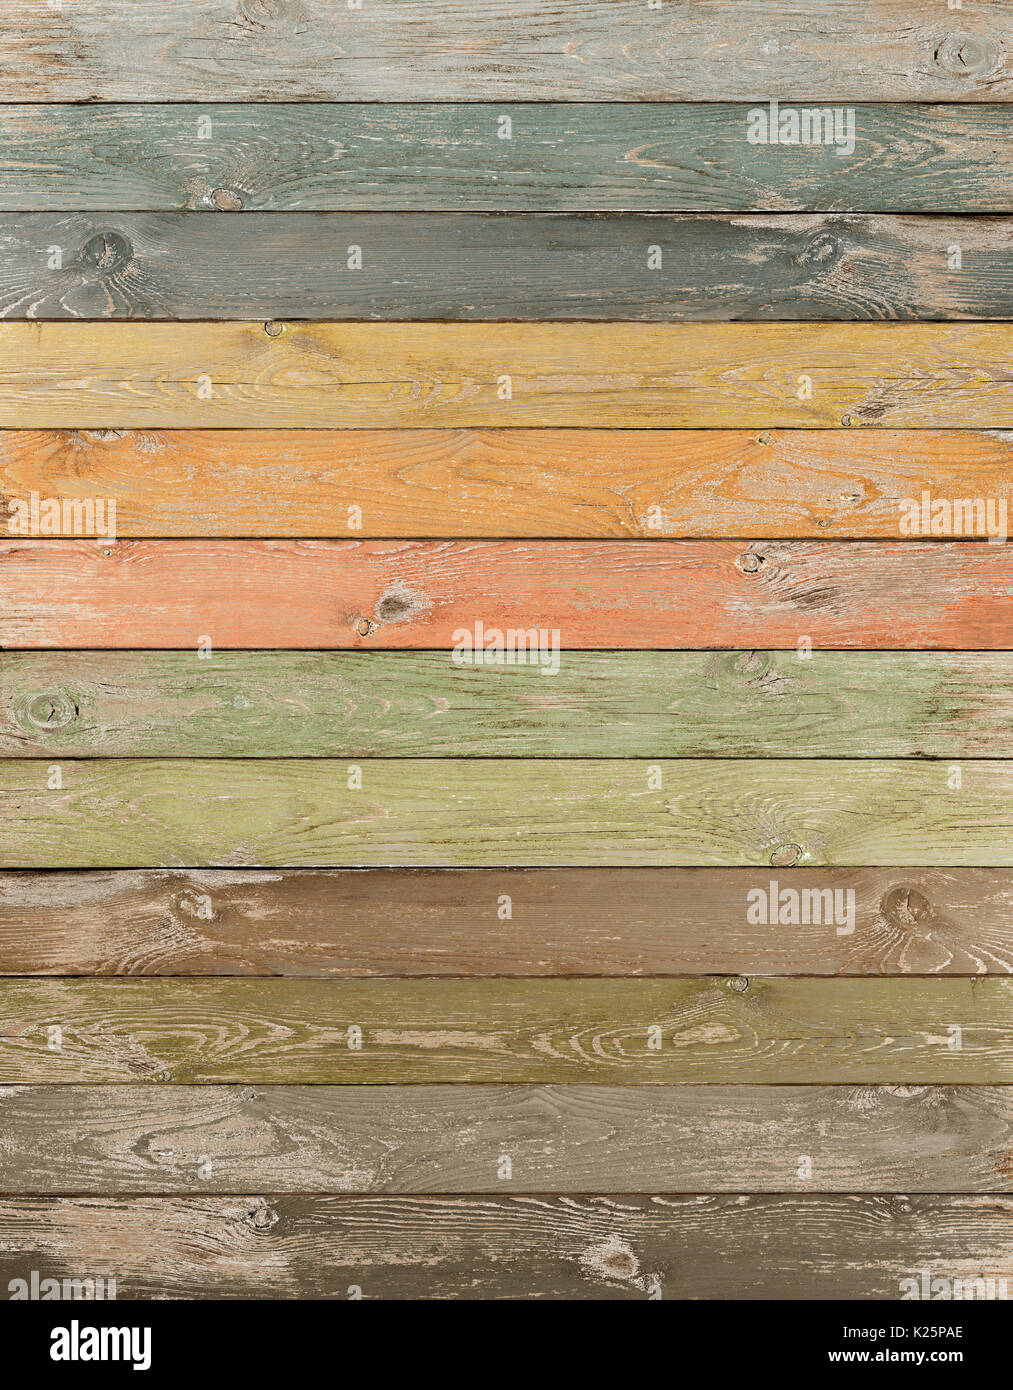 https://c8.alamy.com/comp/K25PAE/vintage-color-wood-planks-vertical-background-K25PAE.jpg